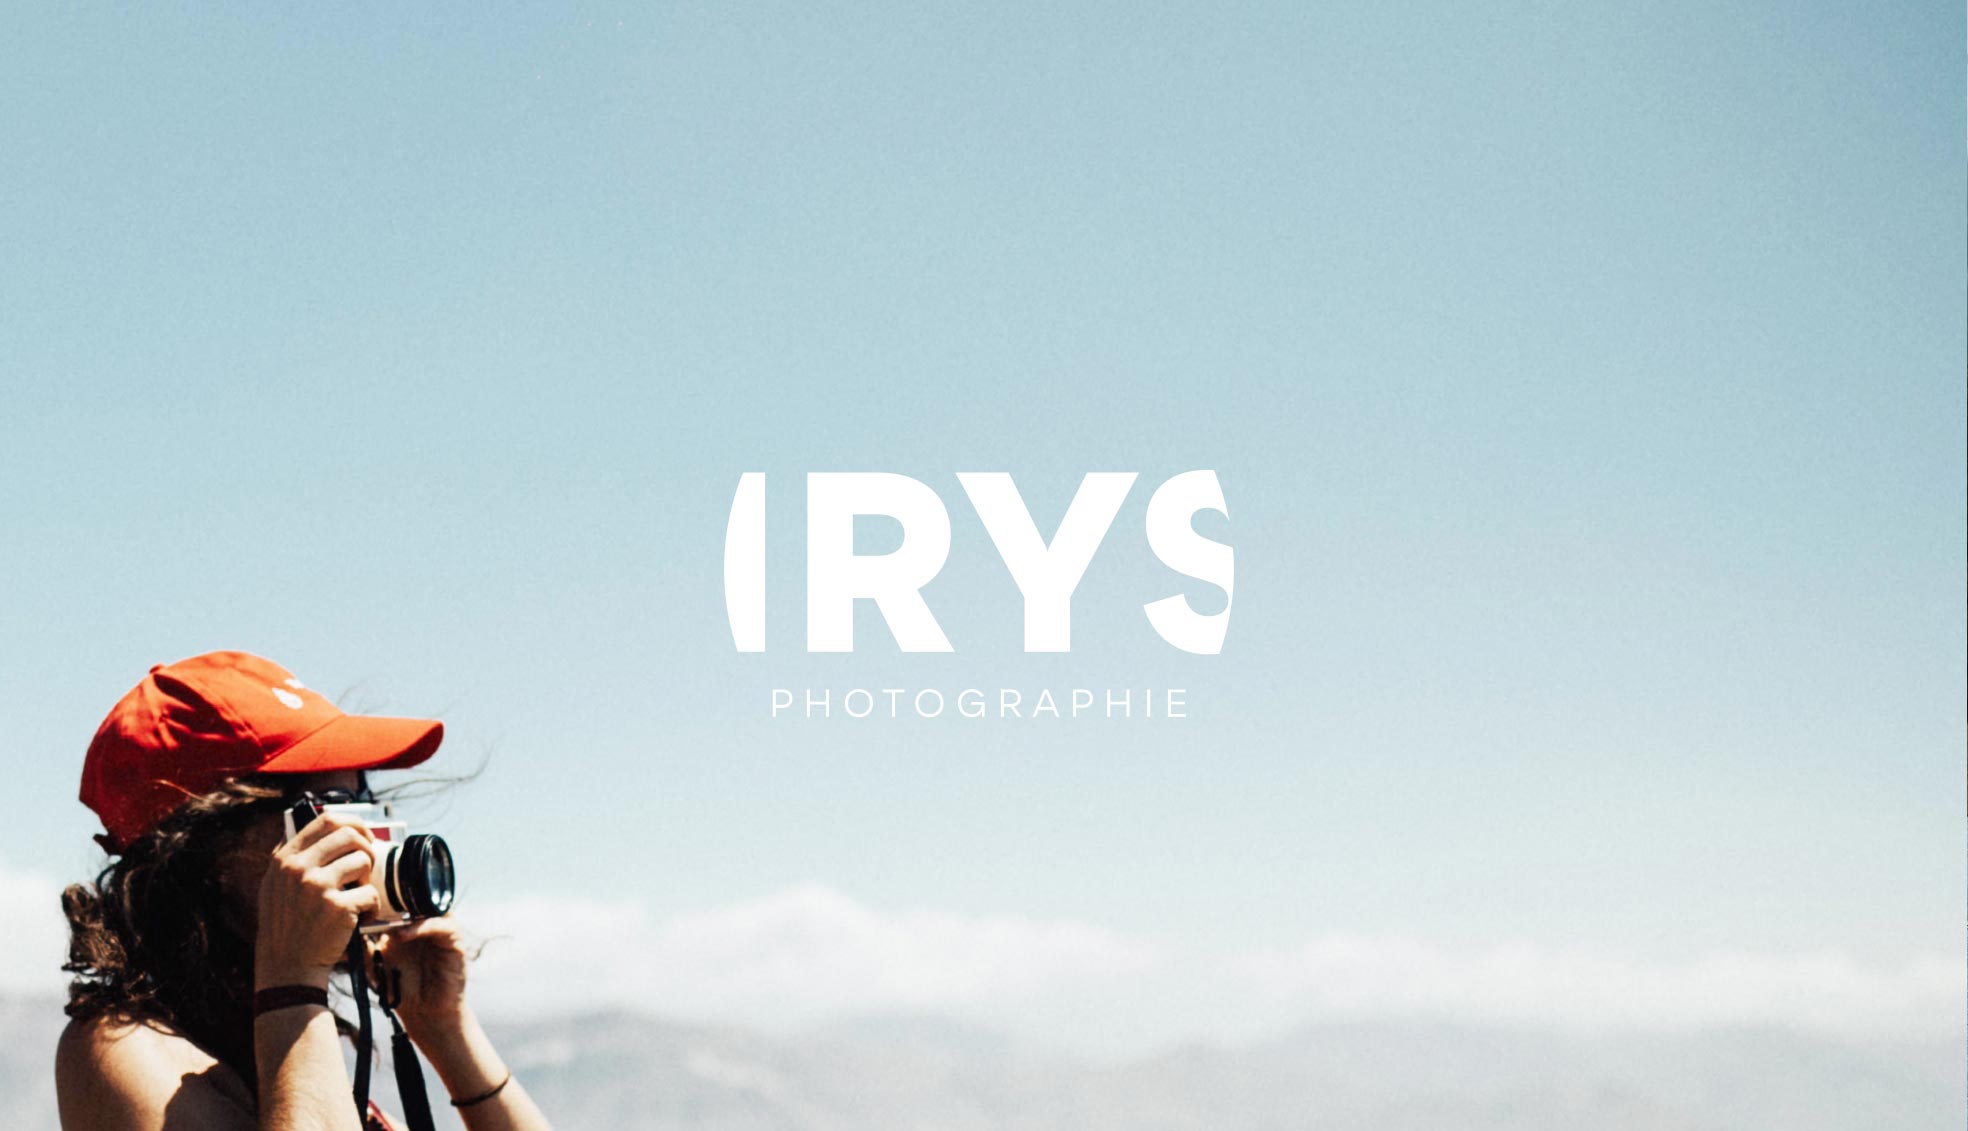 Irys-photographie-création-logo